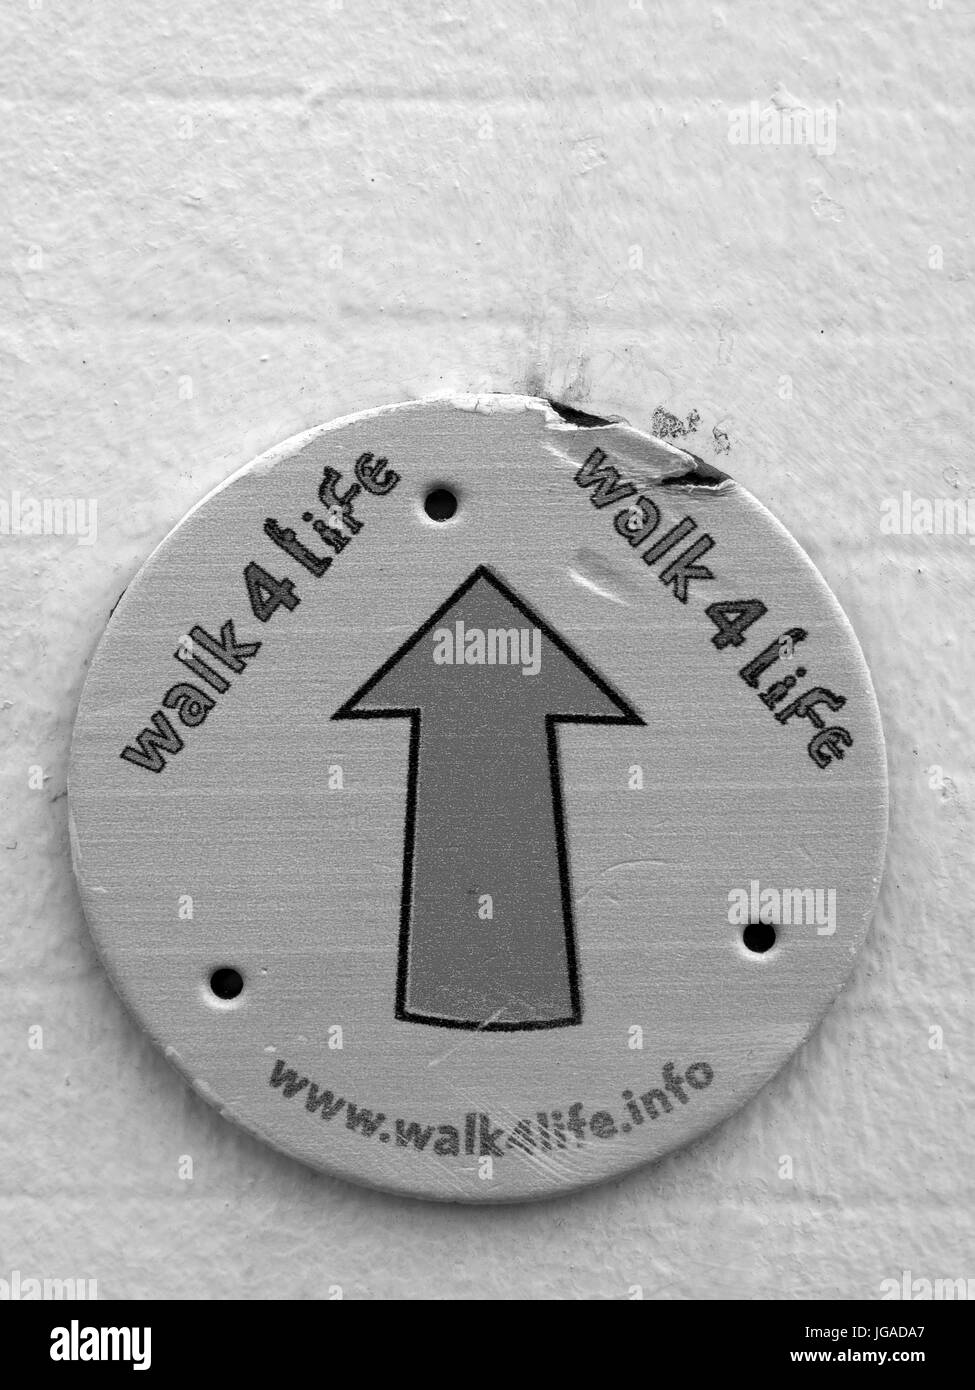 A piedi per tutta la vita il badge montato su un muro di mattoni, eventi sponsorizzati per raccogliere fondi per varie associazioni caritative Foto Stock